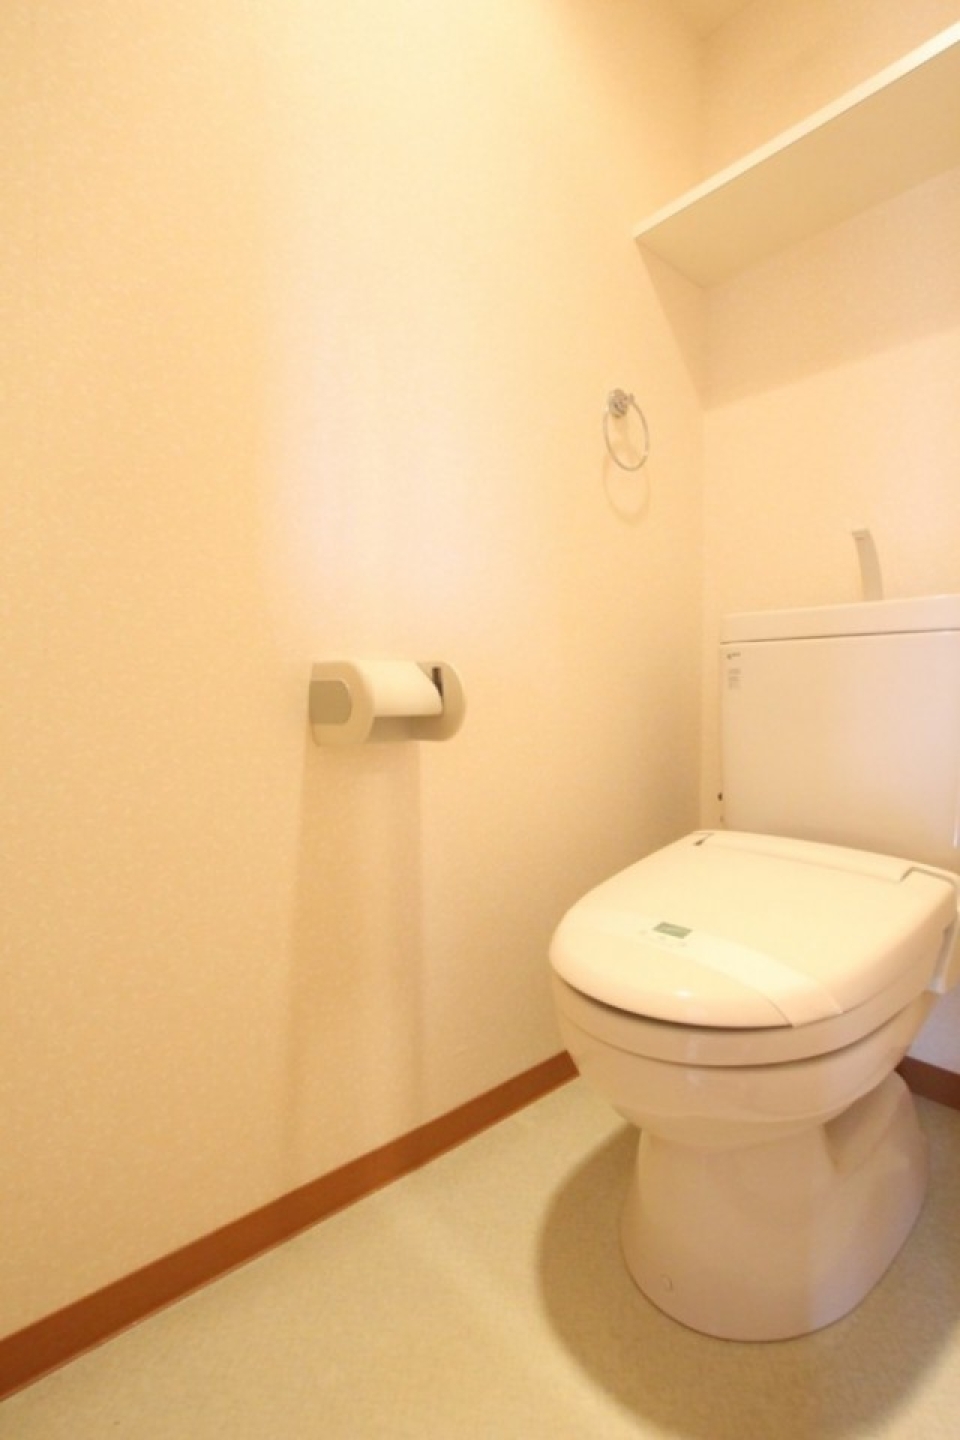 電源コンセントはあるのでシャワートイレの設置は可能です。